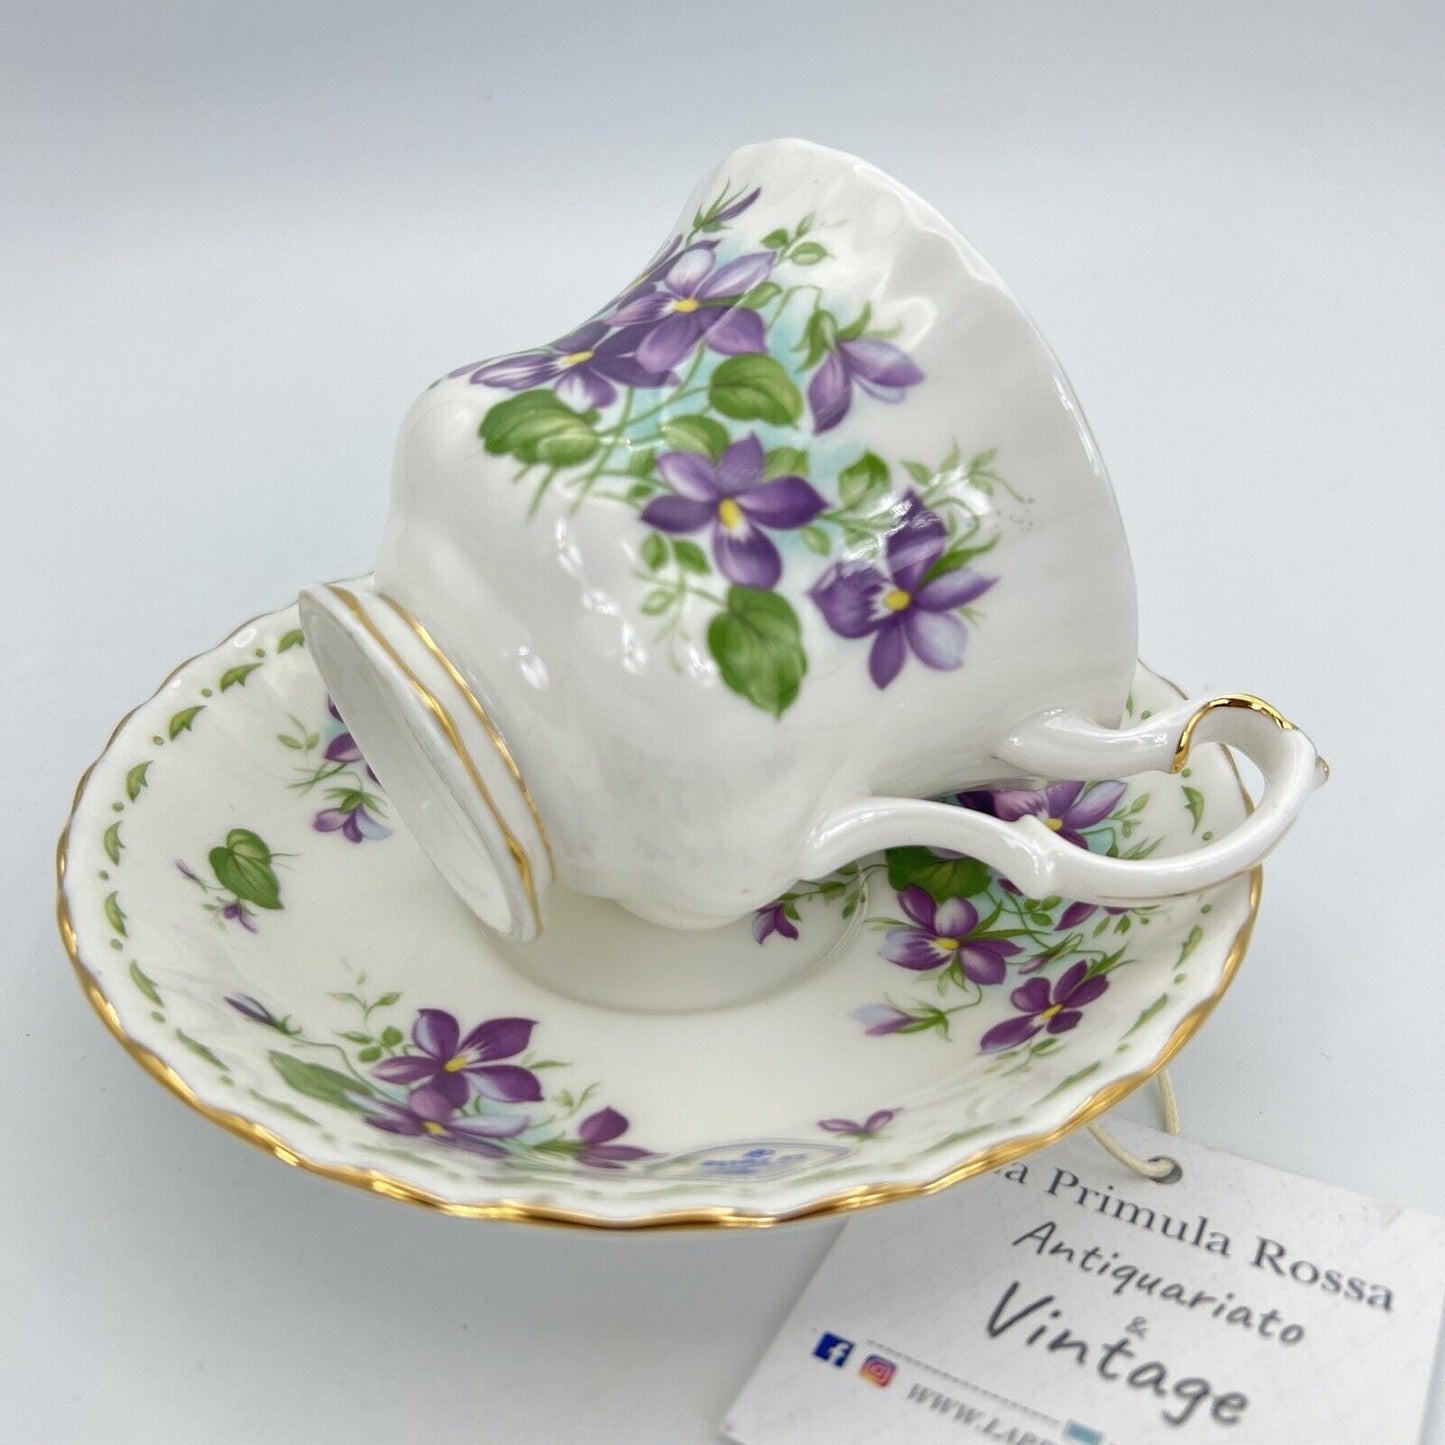 Tazza da tè The in porcellana Royal Albert con mese tazzina inglese FEBBRAIO 900